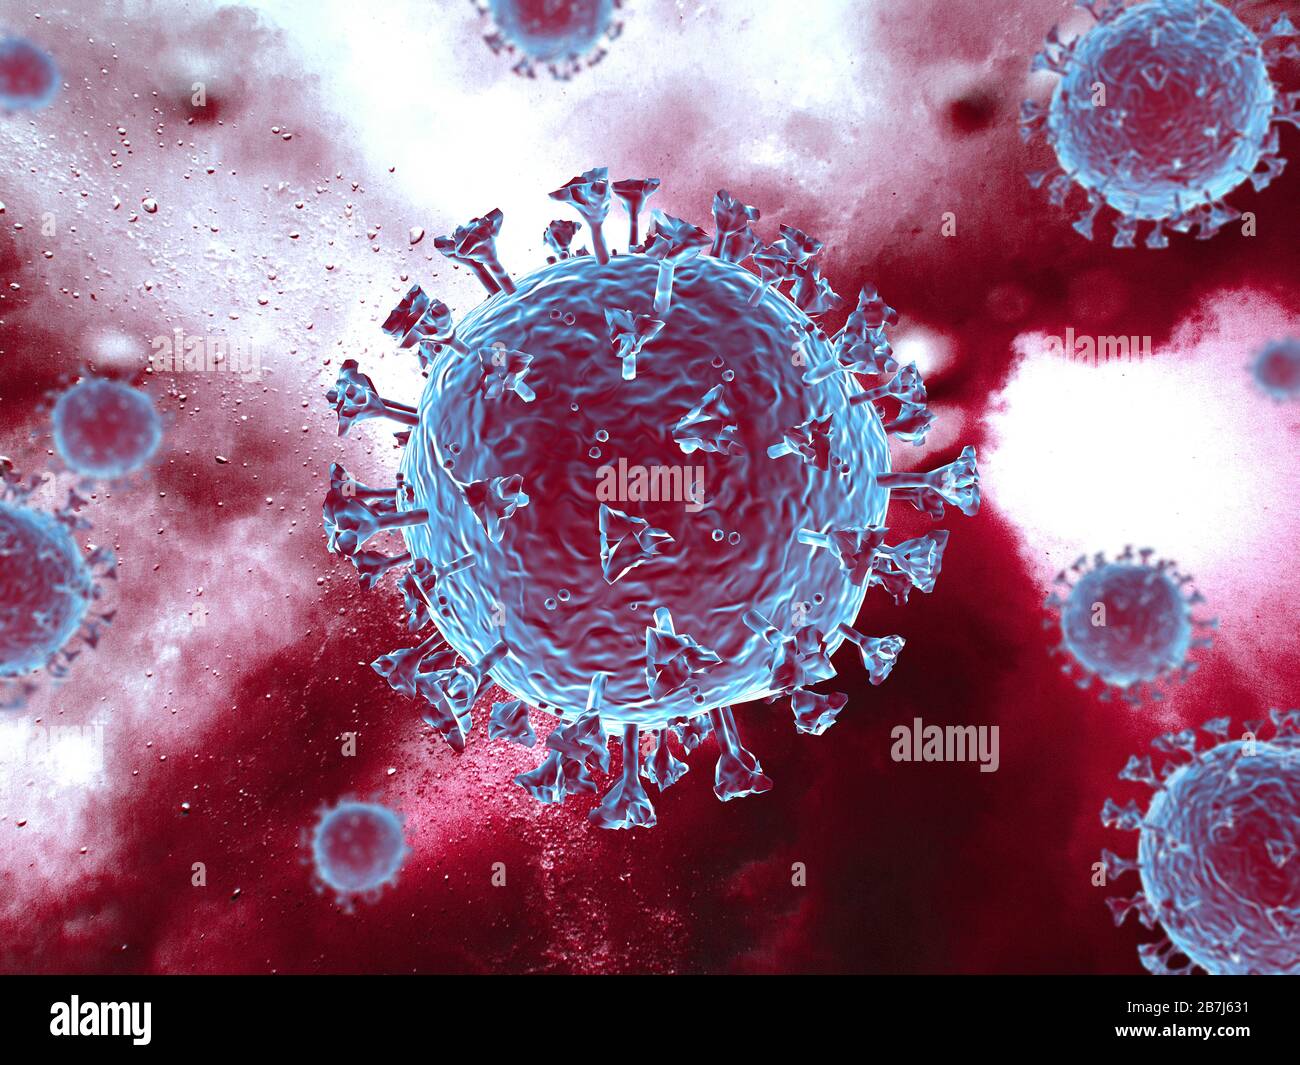 Scène du virus Corona avec structure détaillée. Sujets bleus/rouges sur fond rouge. rendu tridimensionnel. Banque D'Images